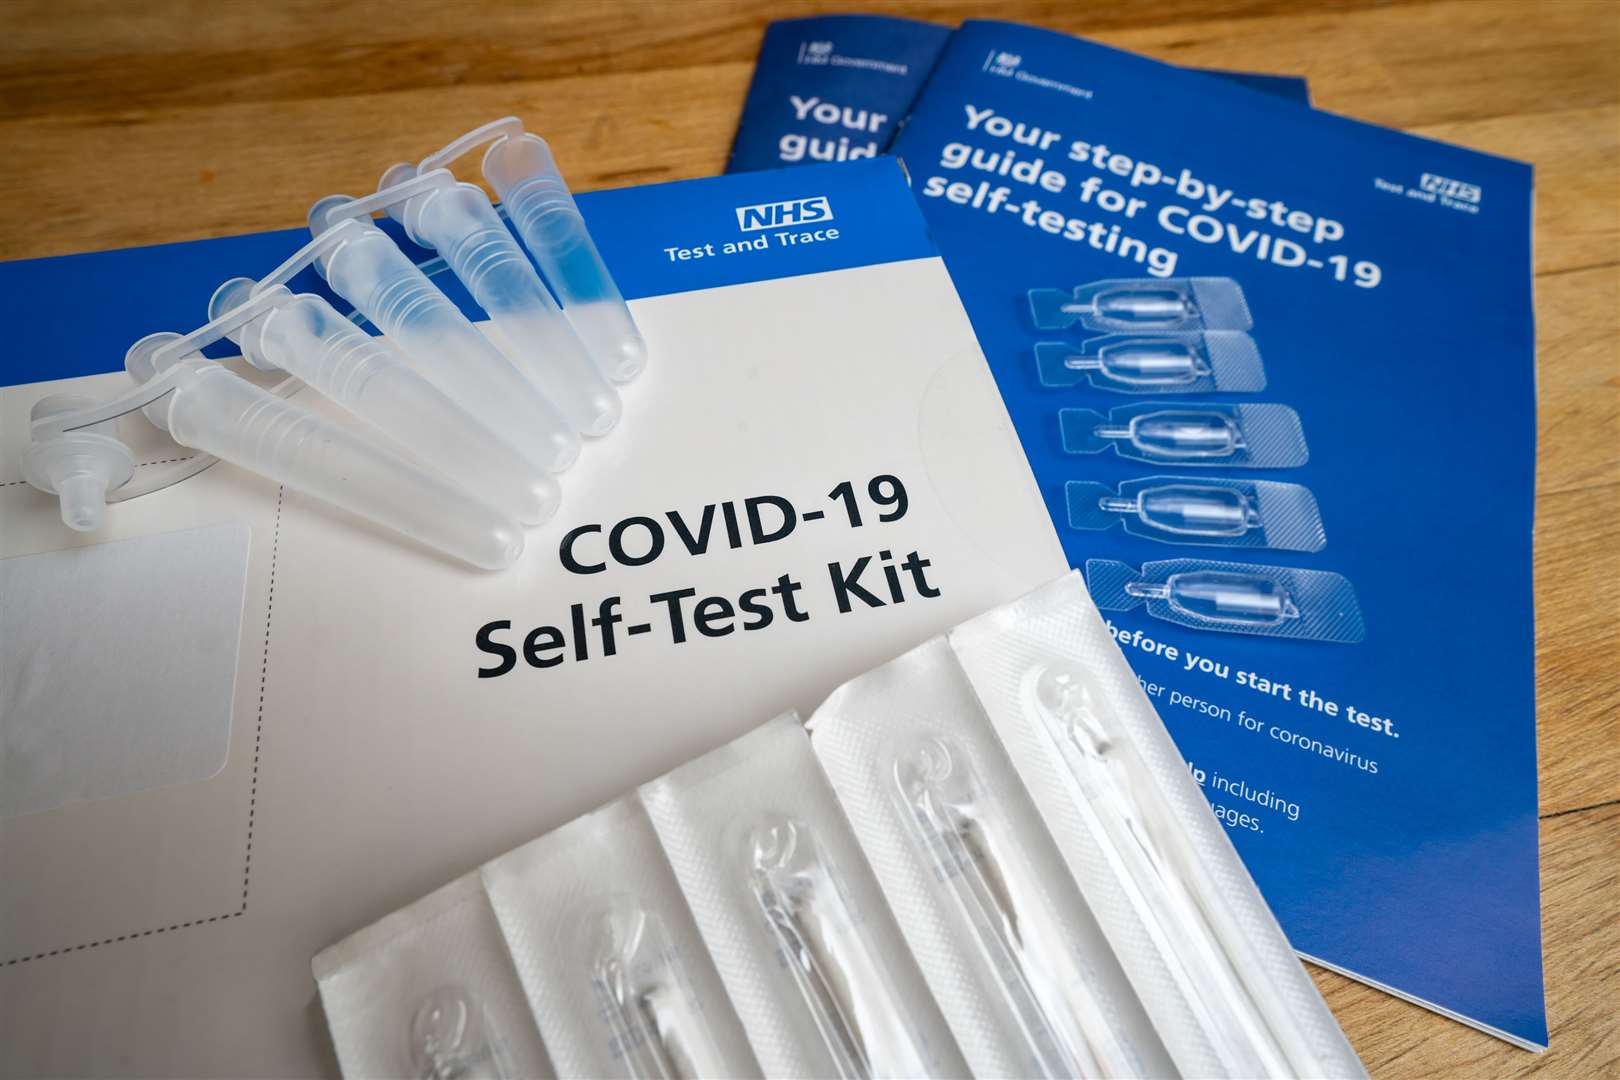 Covid-19 self-test kits